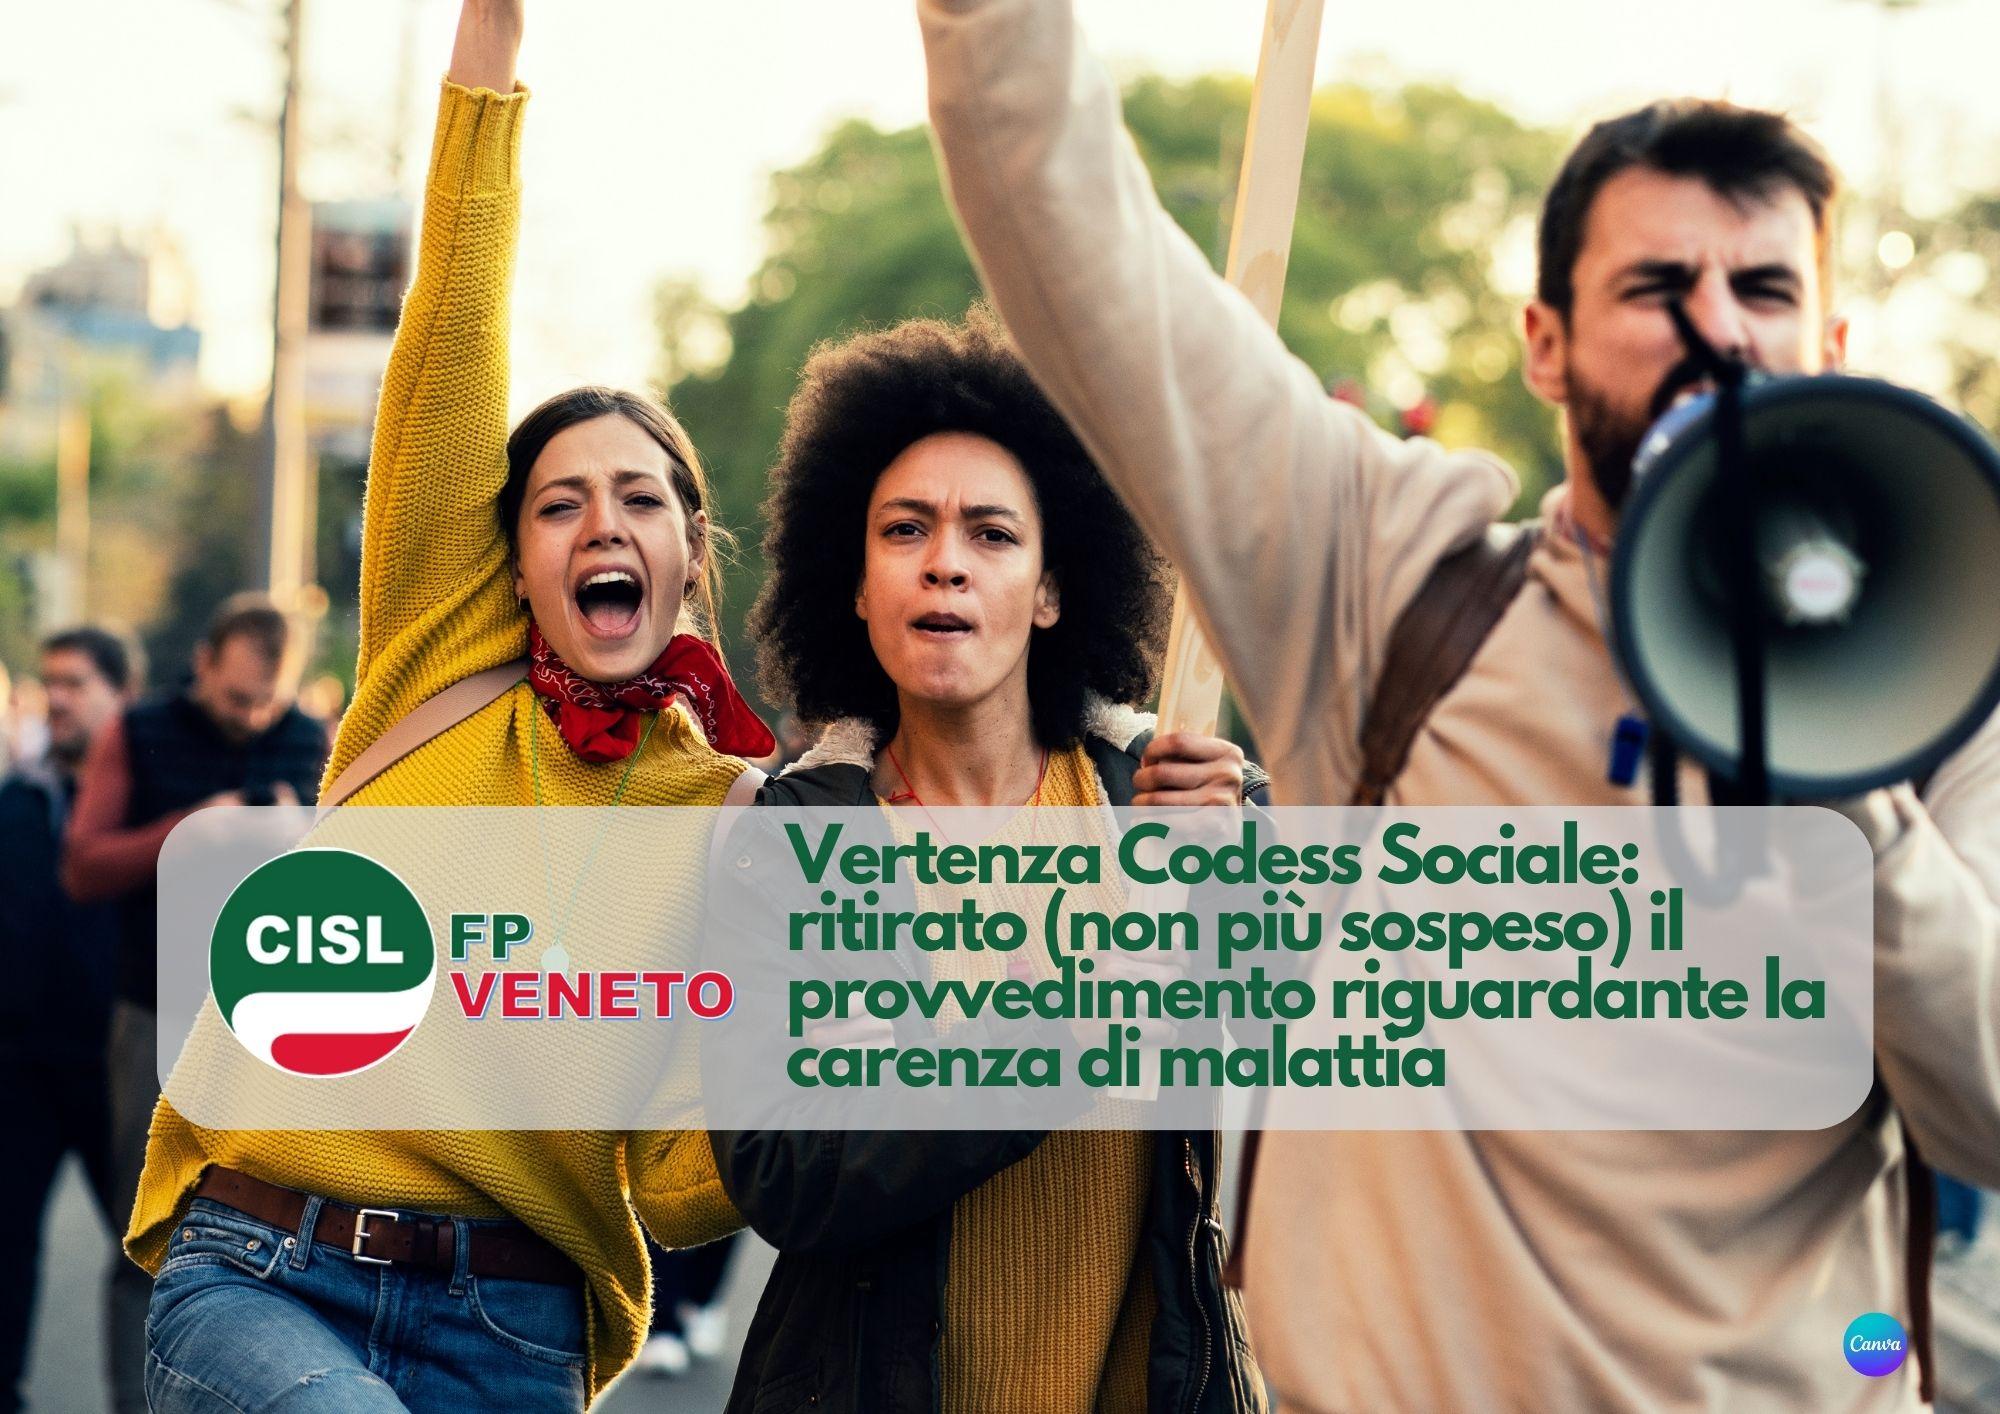 CISL FP Veneto. Vertenza Codess Sociale: ritirato il provvedimento riguardante la carenza di malattia